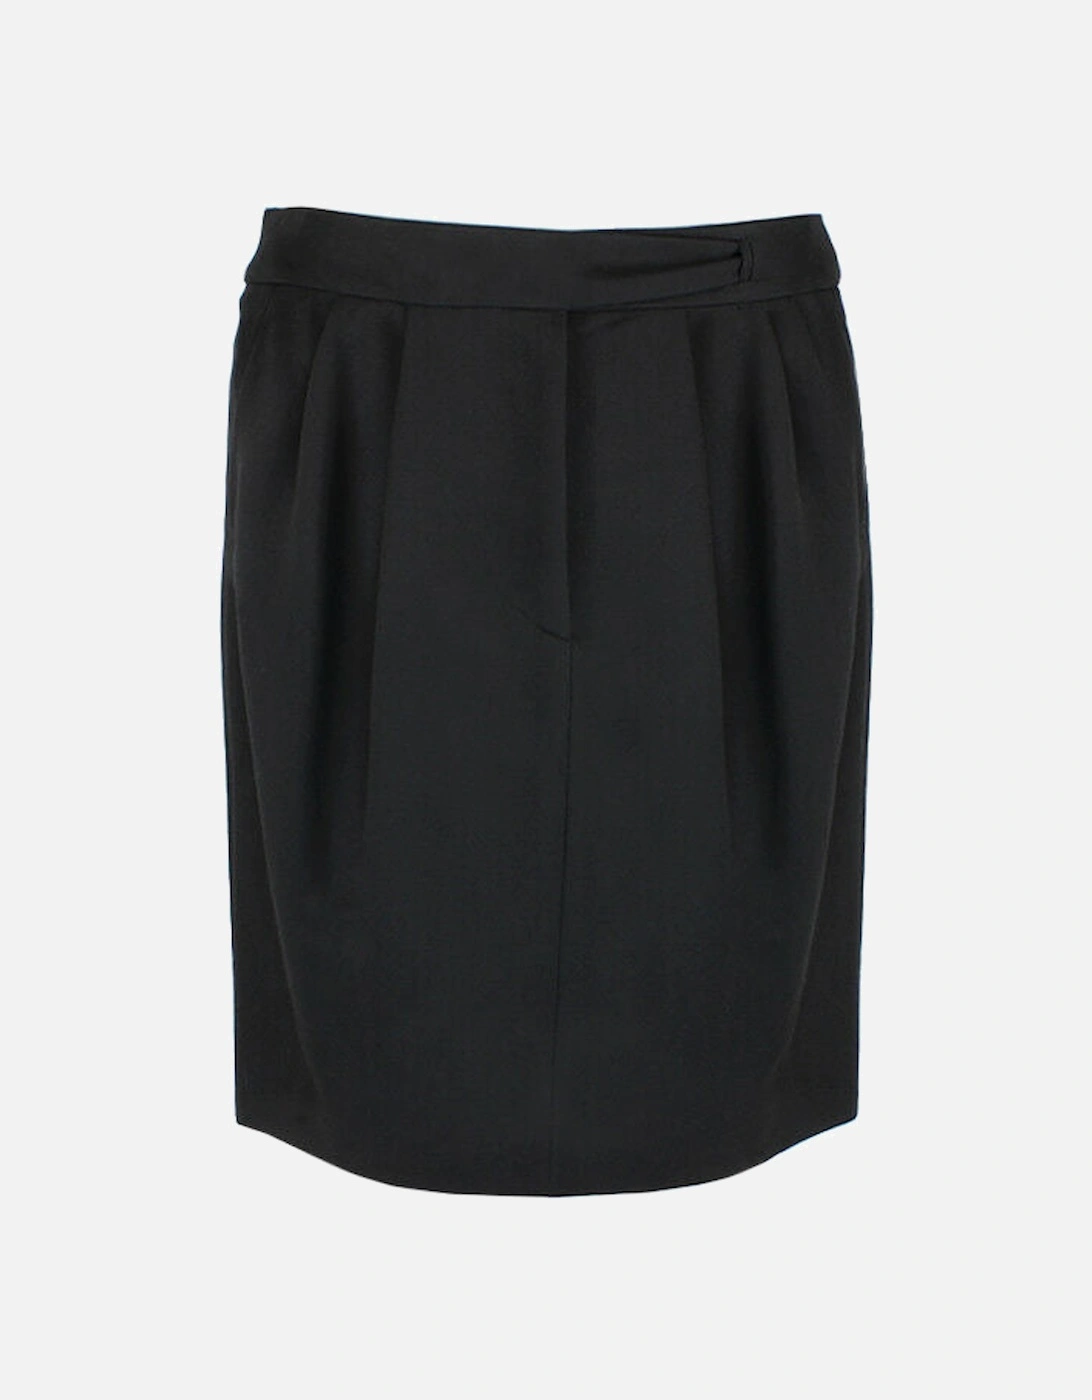 Skirt, 6 of 5